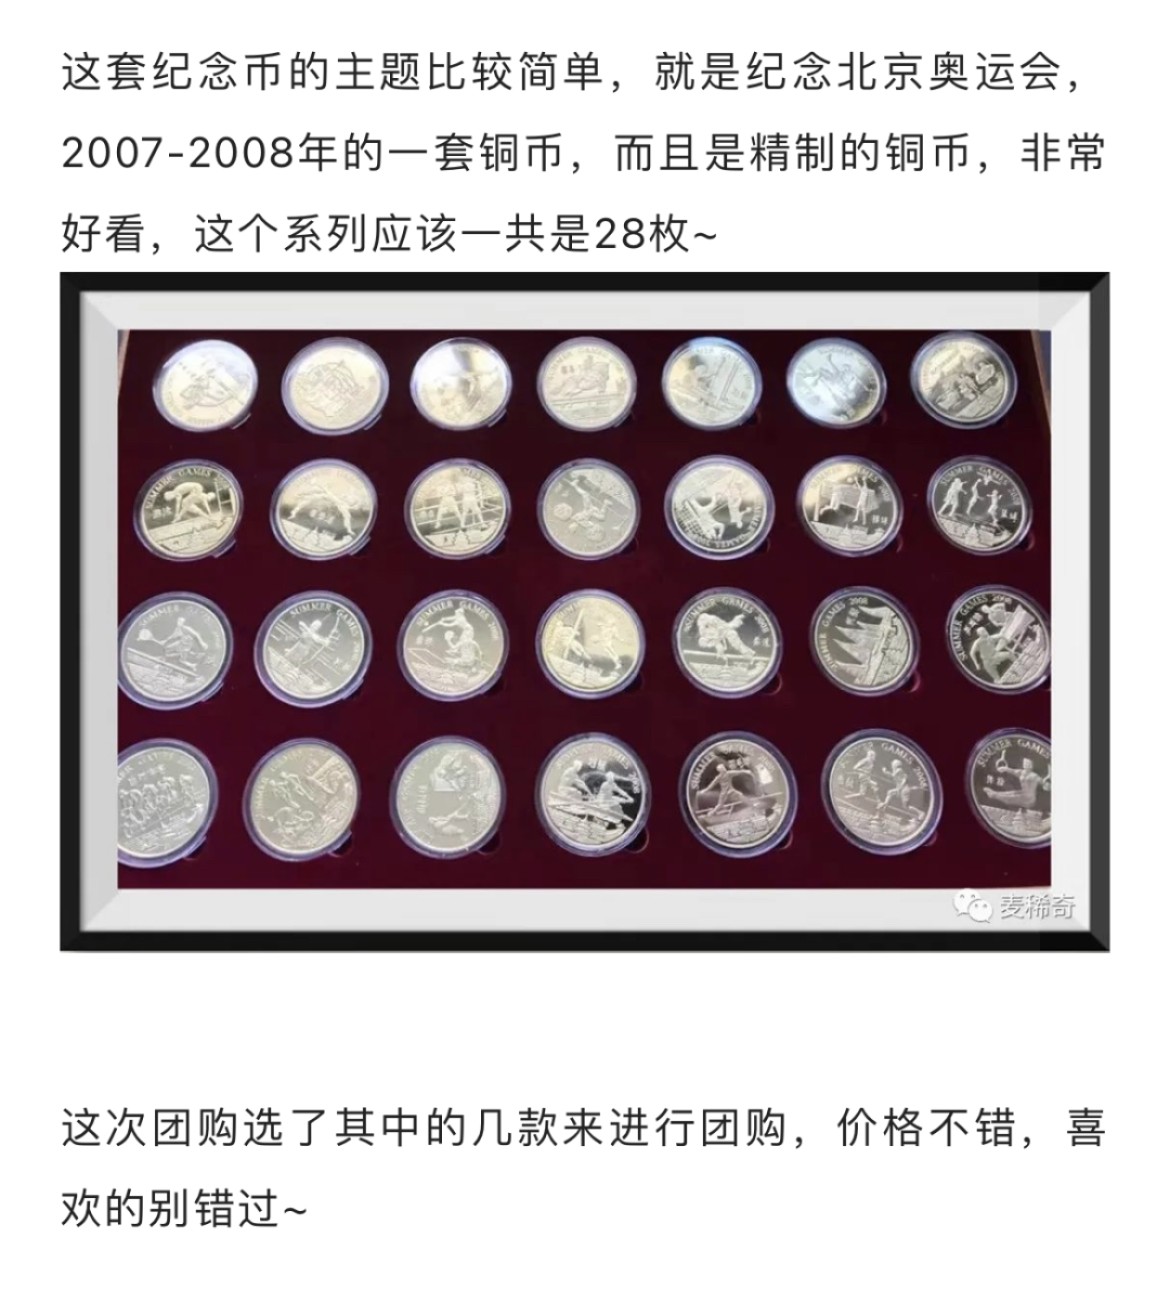 【稀奇优惠团第11期】【朝鲜】北京奥运会精制铜币【2022.10.28】
